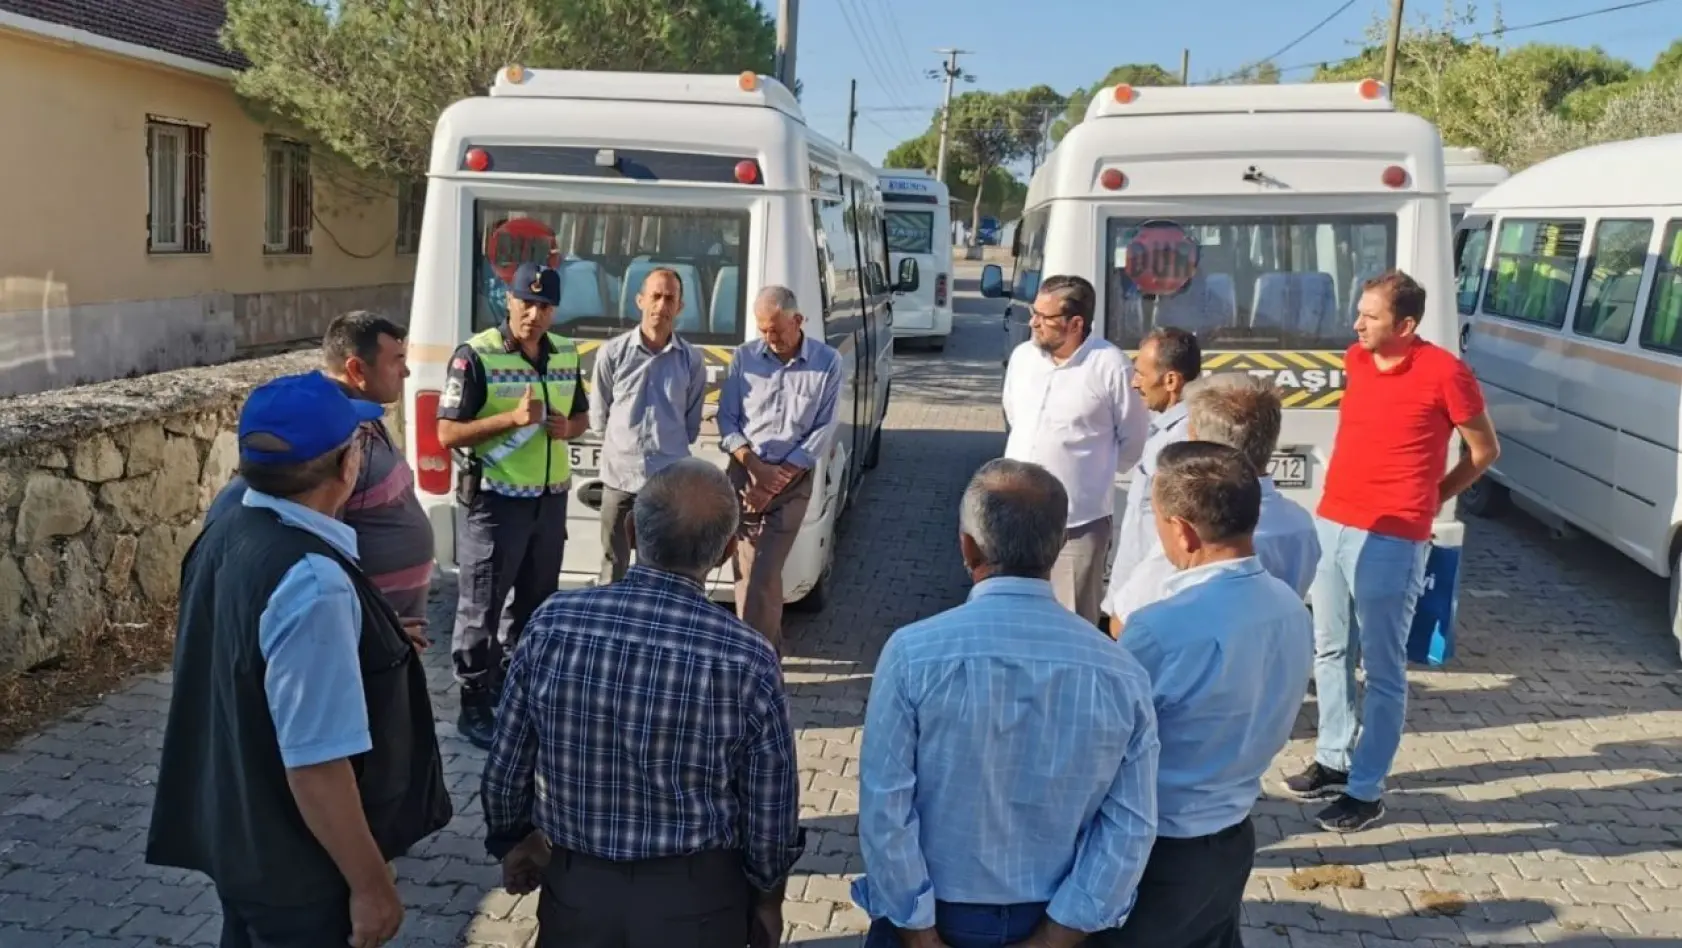 İzmir'de jandarmadan servis şoförleri ve rehber personele eğitim